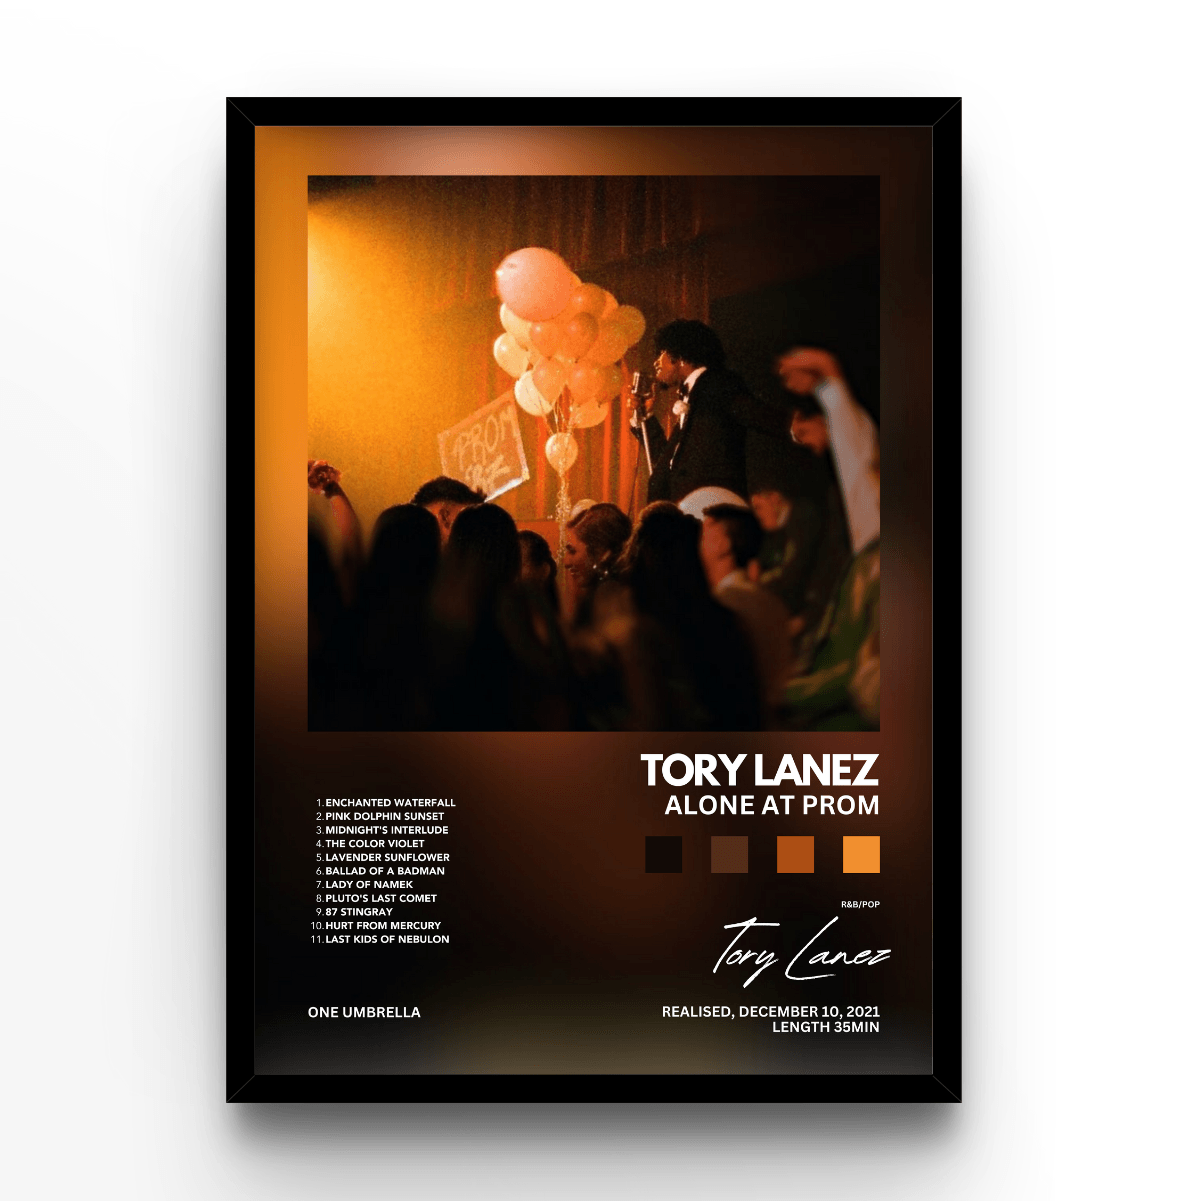 Tory Lanez - A4, A3, A2 Posters Base - Poster Print Shop / Art Prints / PostersBase